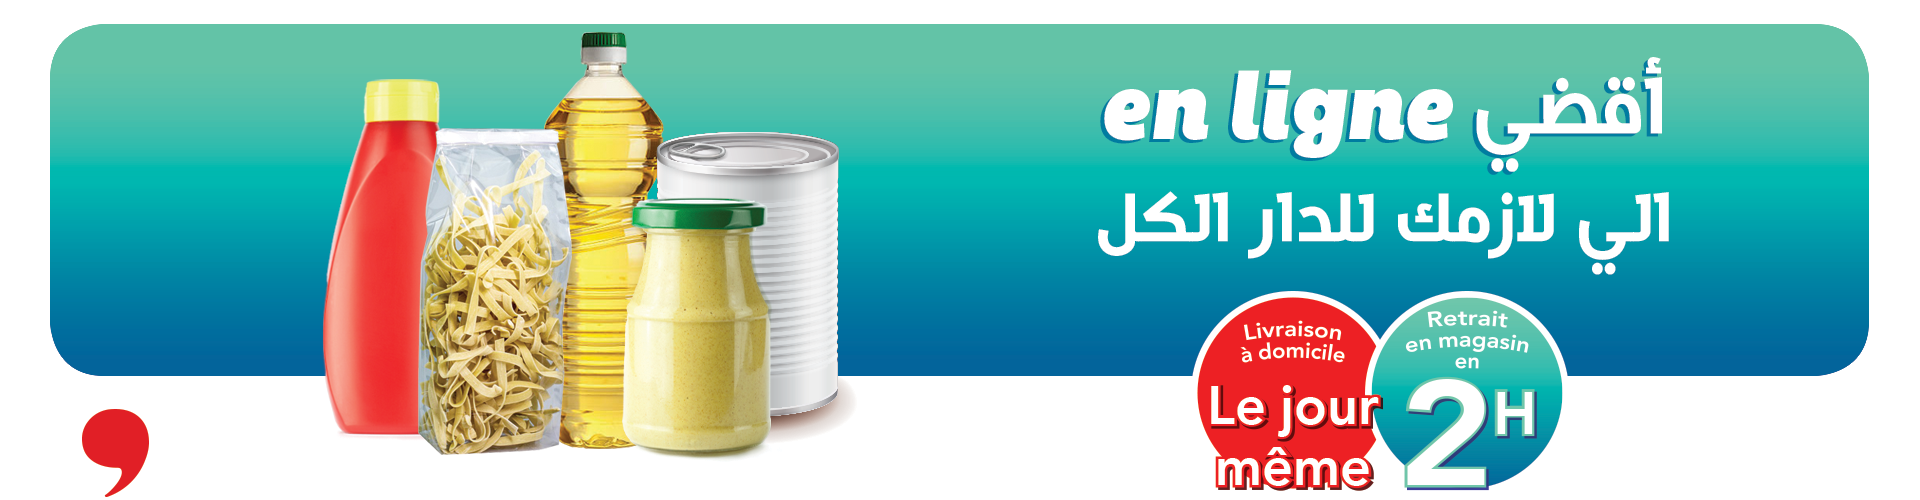 Founa, supermarché en ligne tunisie, courses en ligne, livraison à